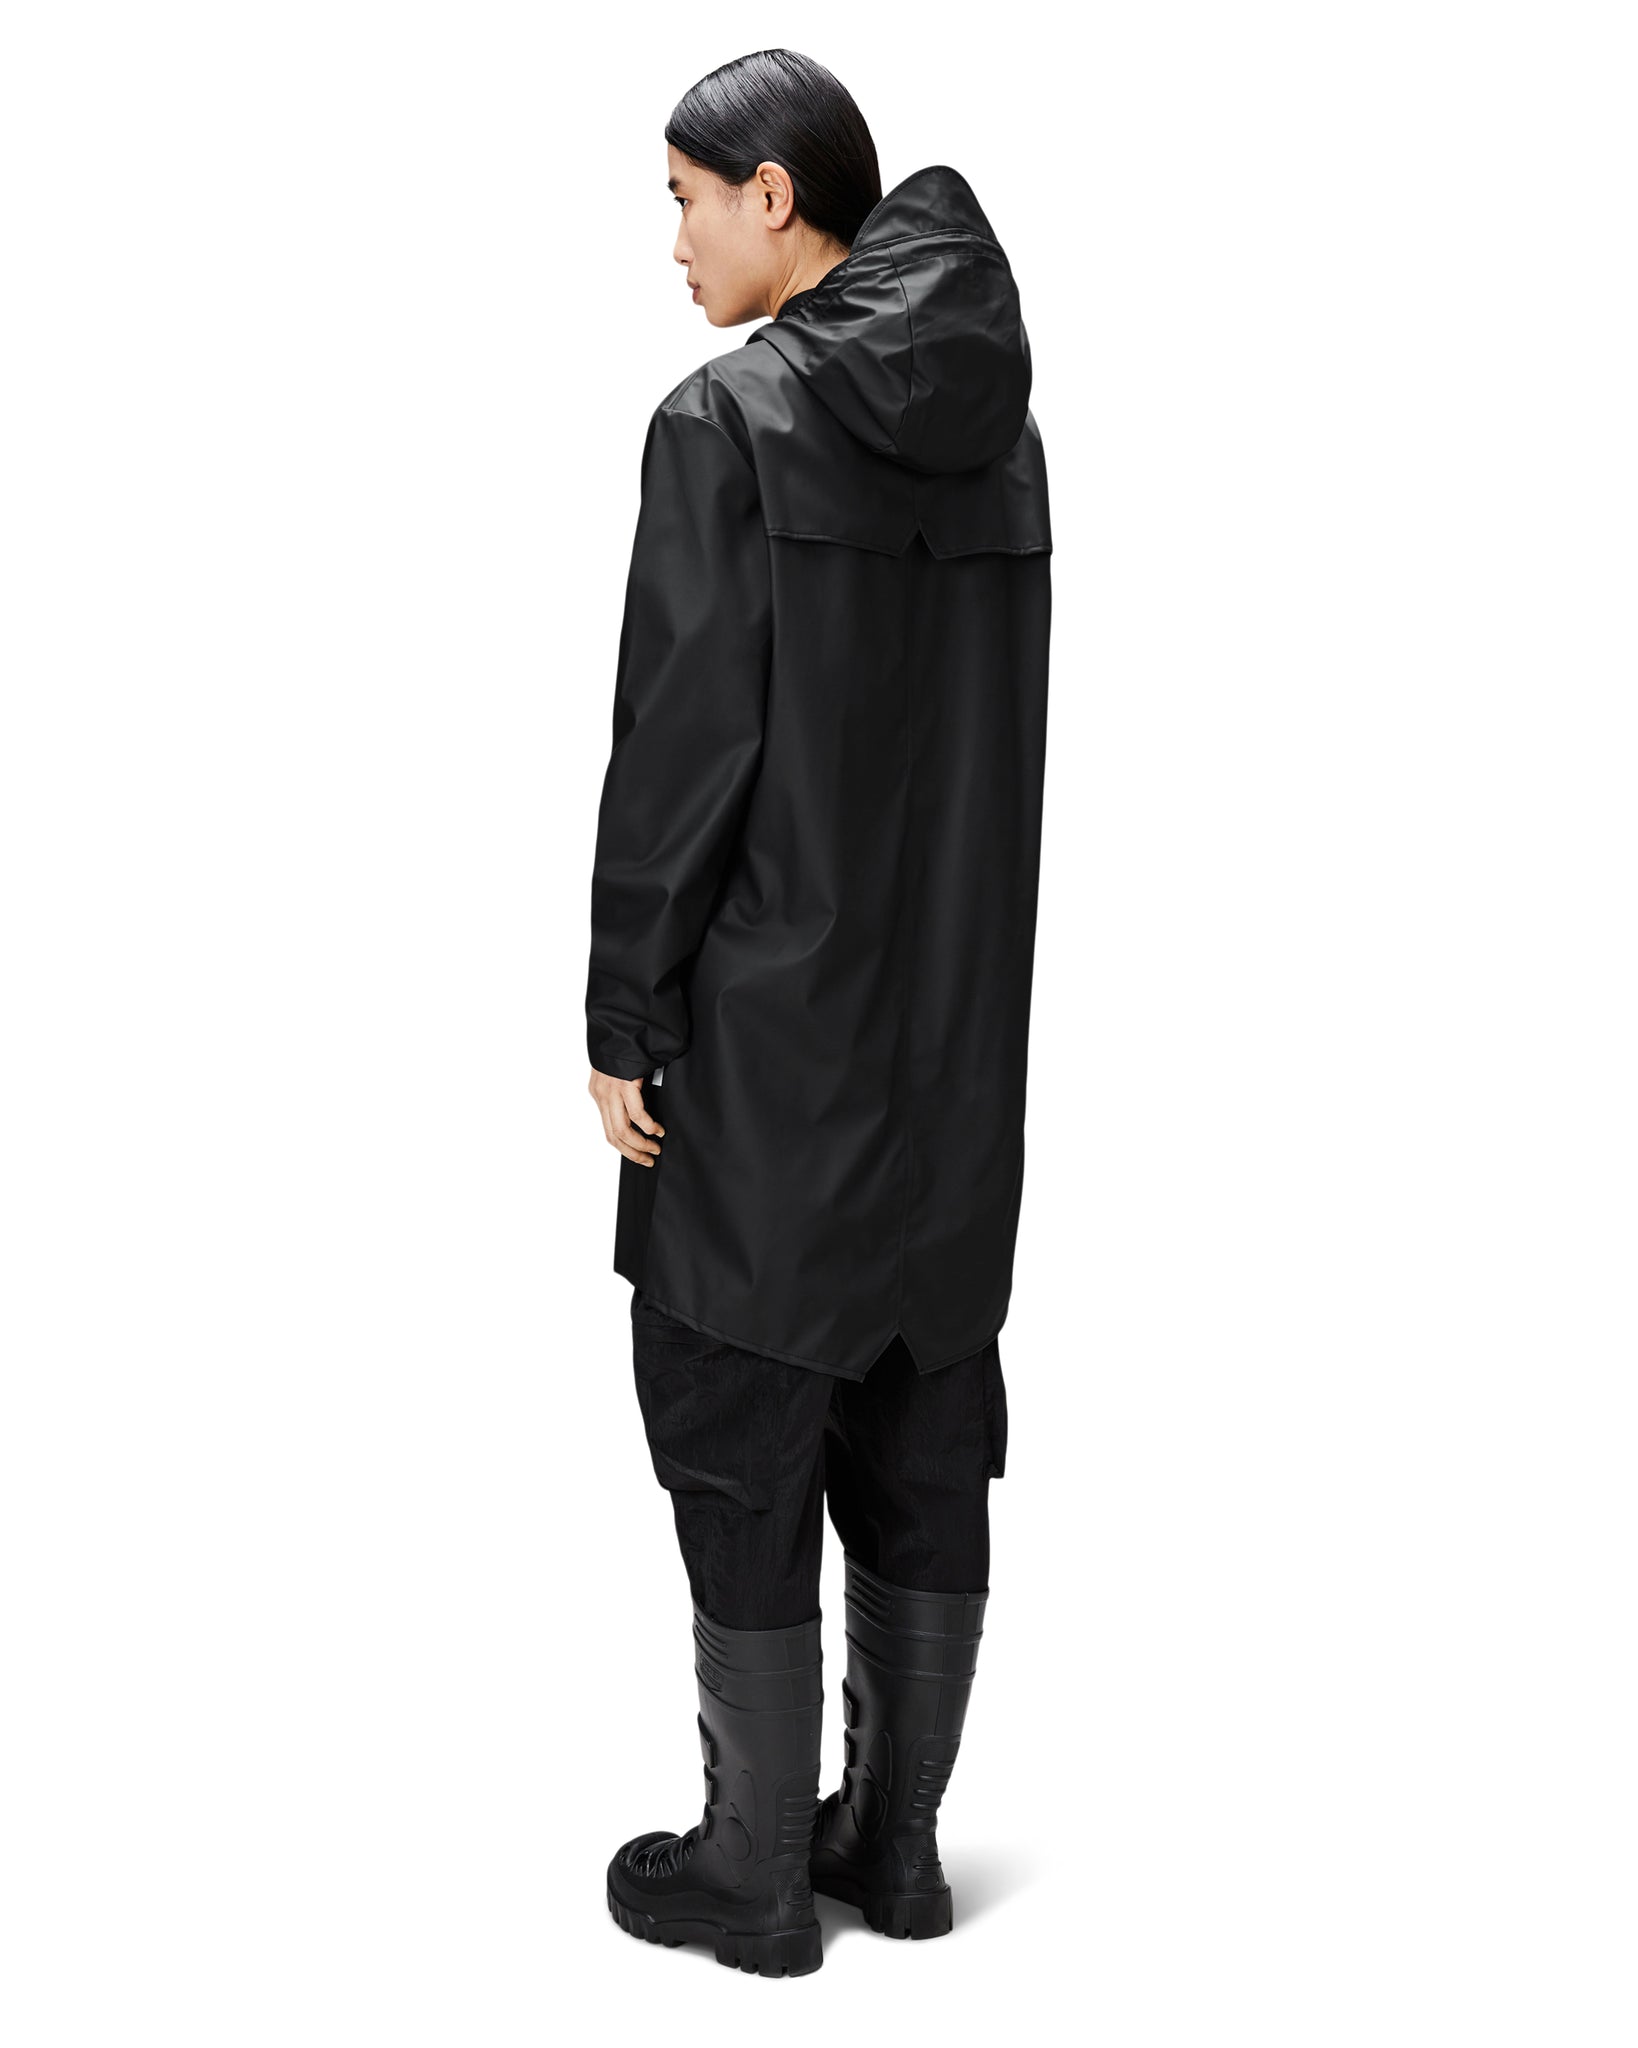 Chubasquer Long Jacket - Black (Unisex)